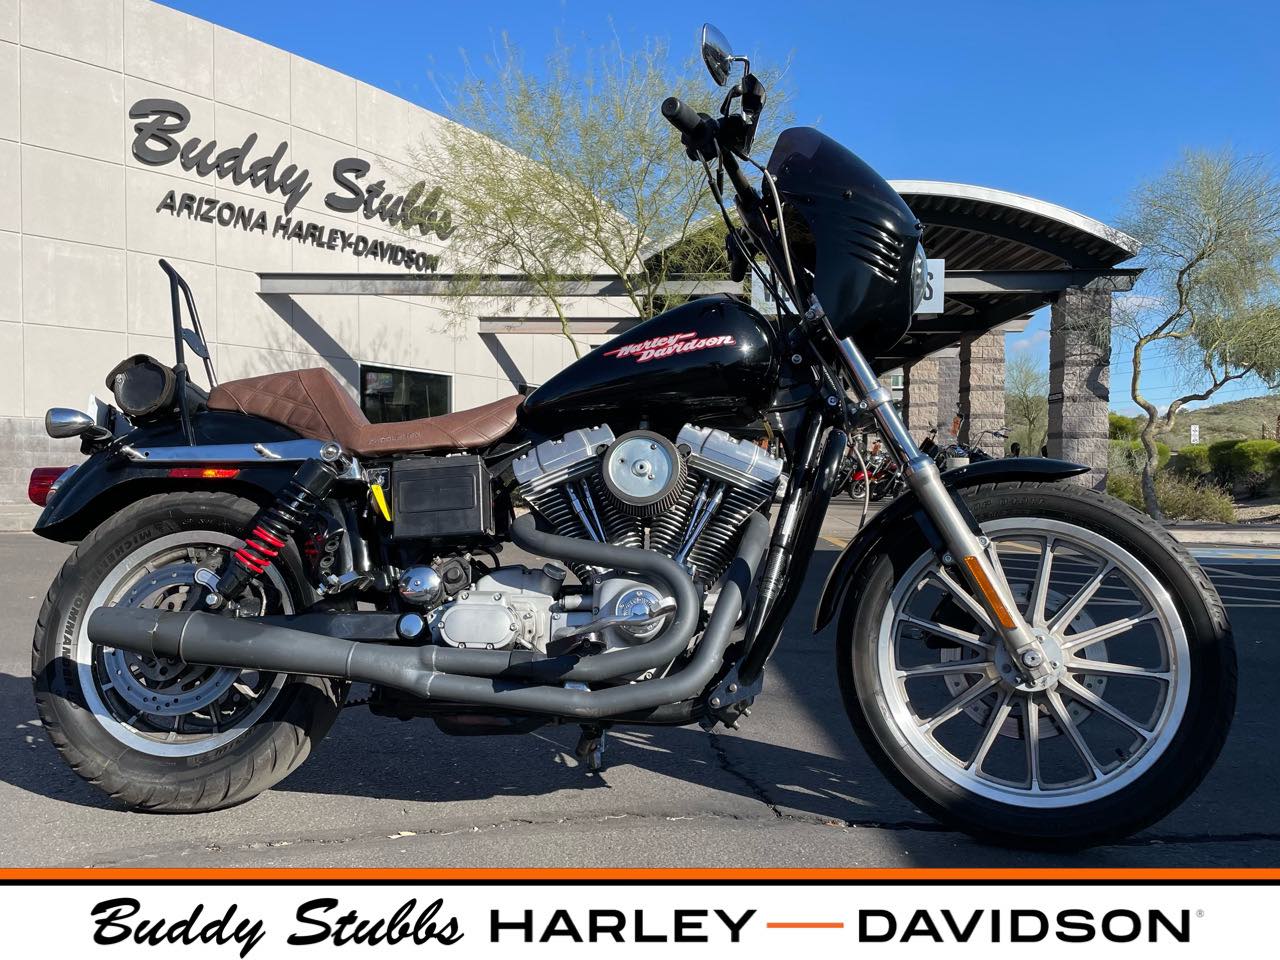 2005 Harley-Davidson Dyna Glide Super Glide at Buddy Stubbs Arizona Harley-Davidson